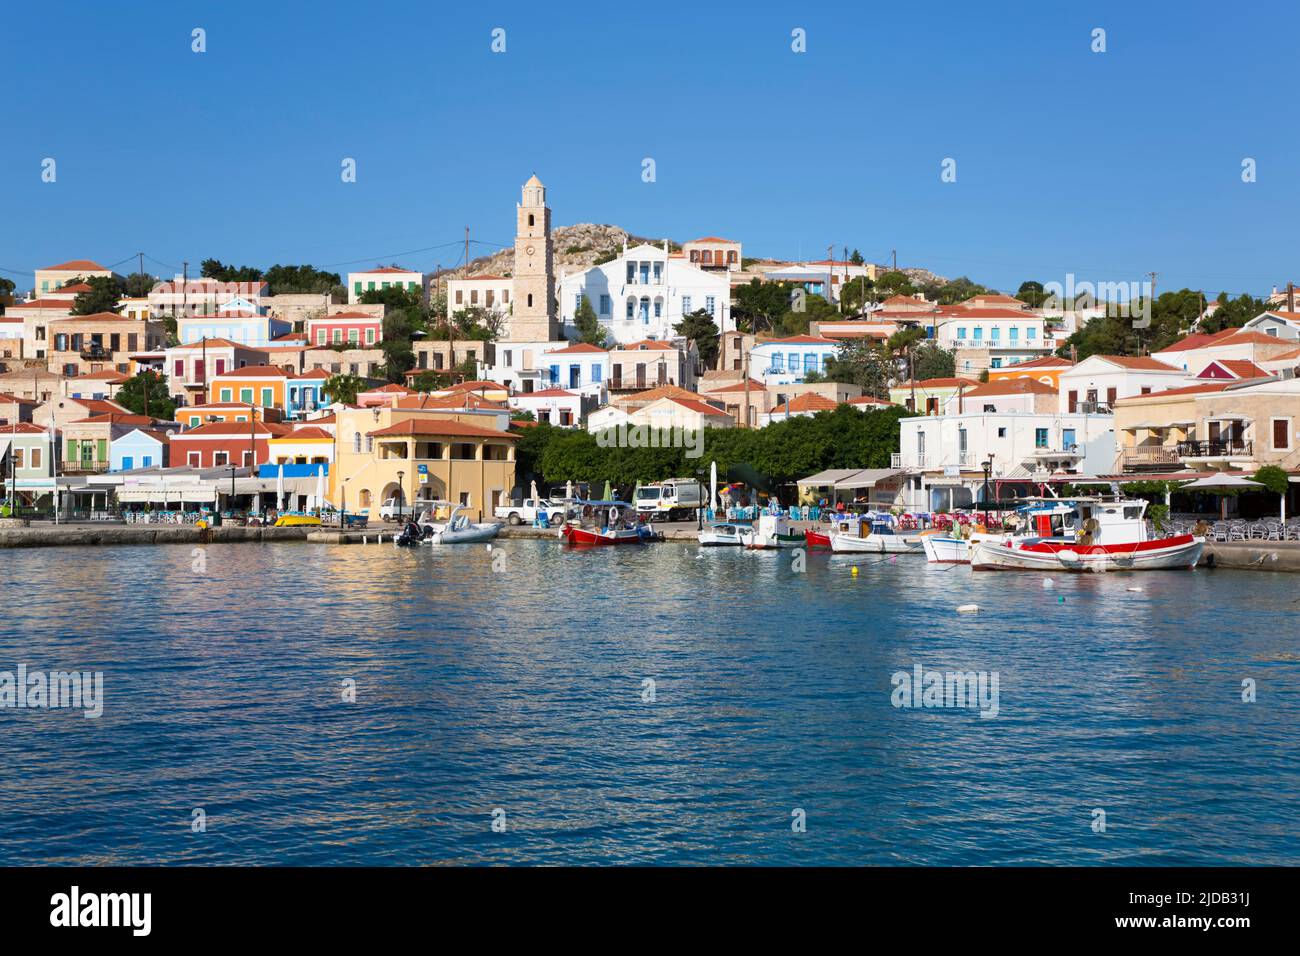 Des bâtiments et des bateaux traditionnels amarrés le long du front de mer dans le port d'Emborio, la ville principale sur l'île de Halki (Chalki) Banque D'Images